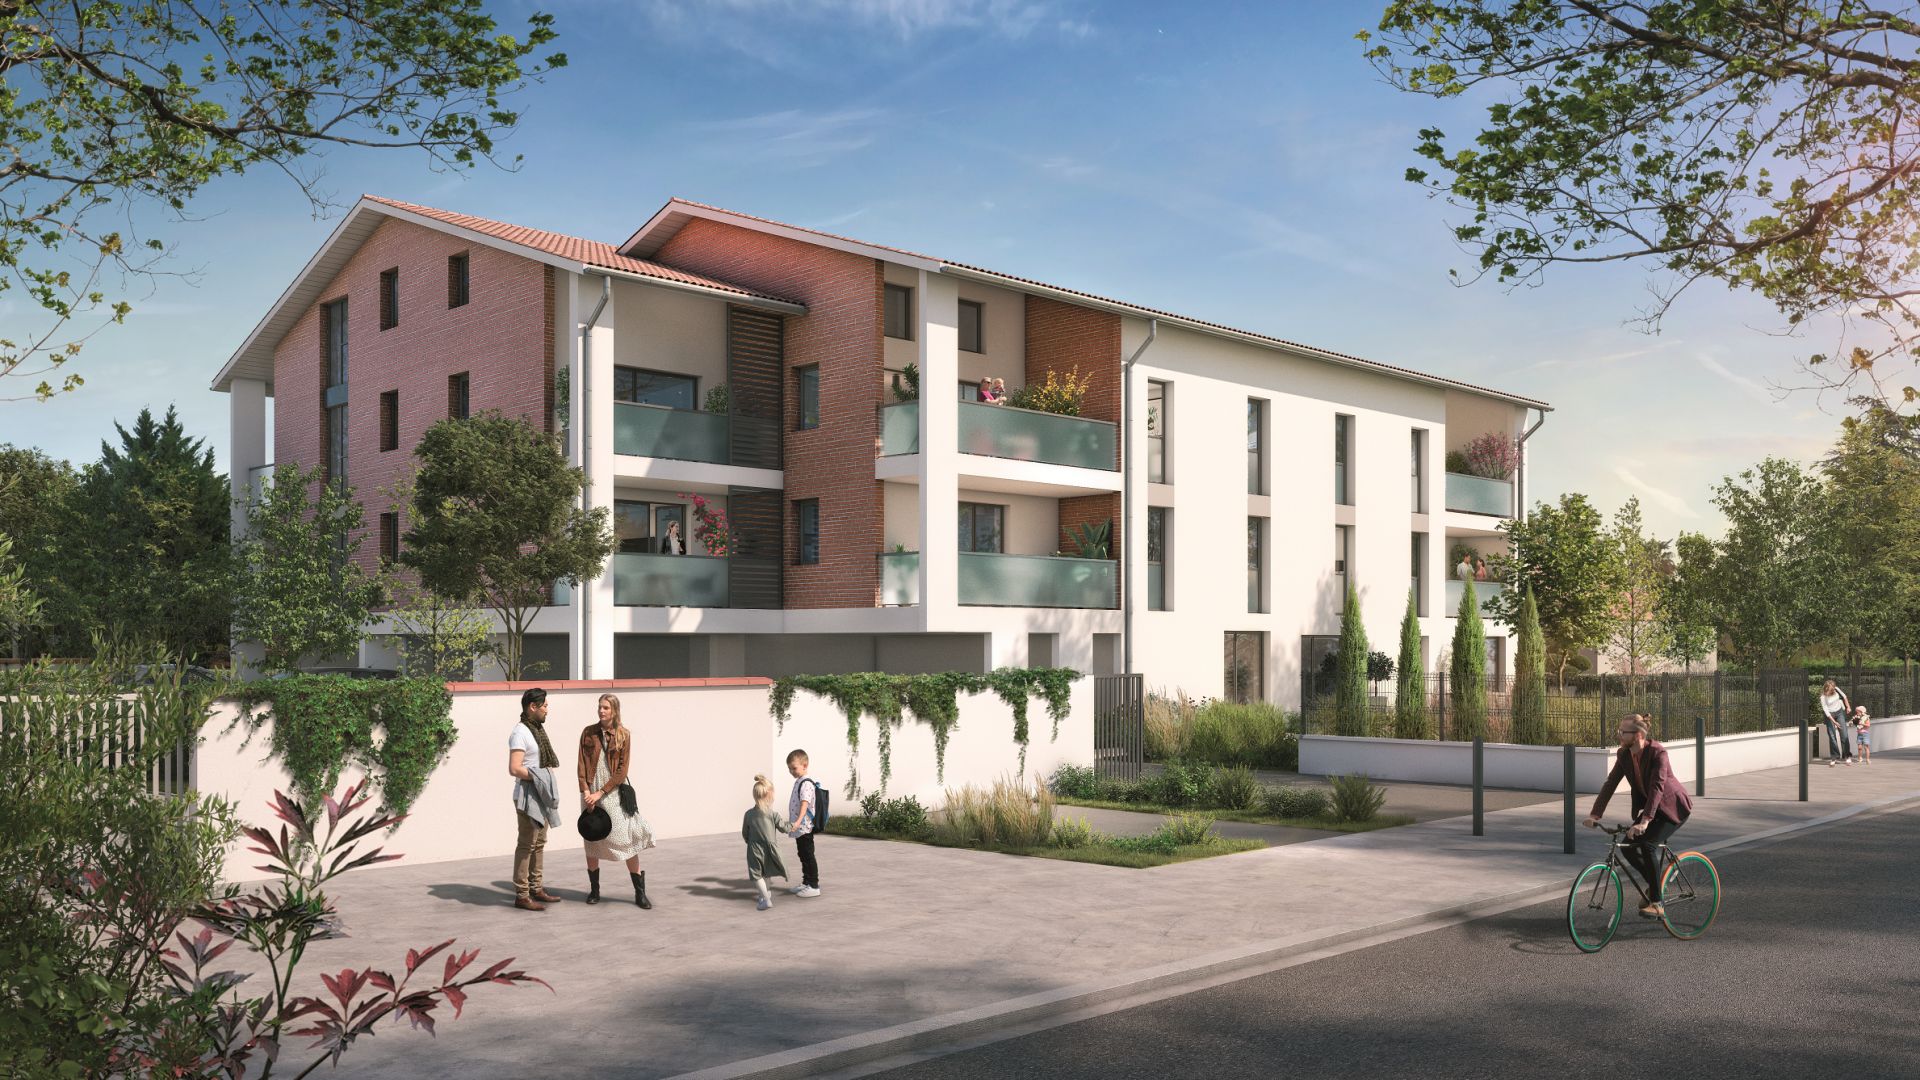 Greencity immobilier - achat appartements neufs du T1Bis au T4Duplex - Résidence Clos des Feuillants - 31200 Toulouse